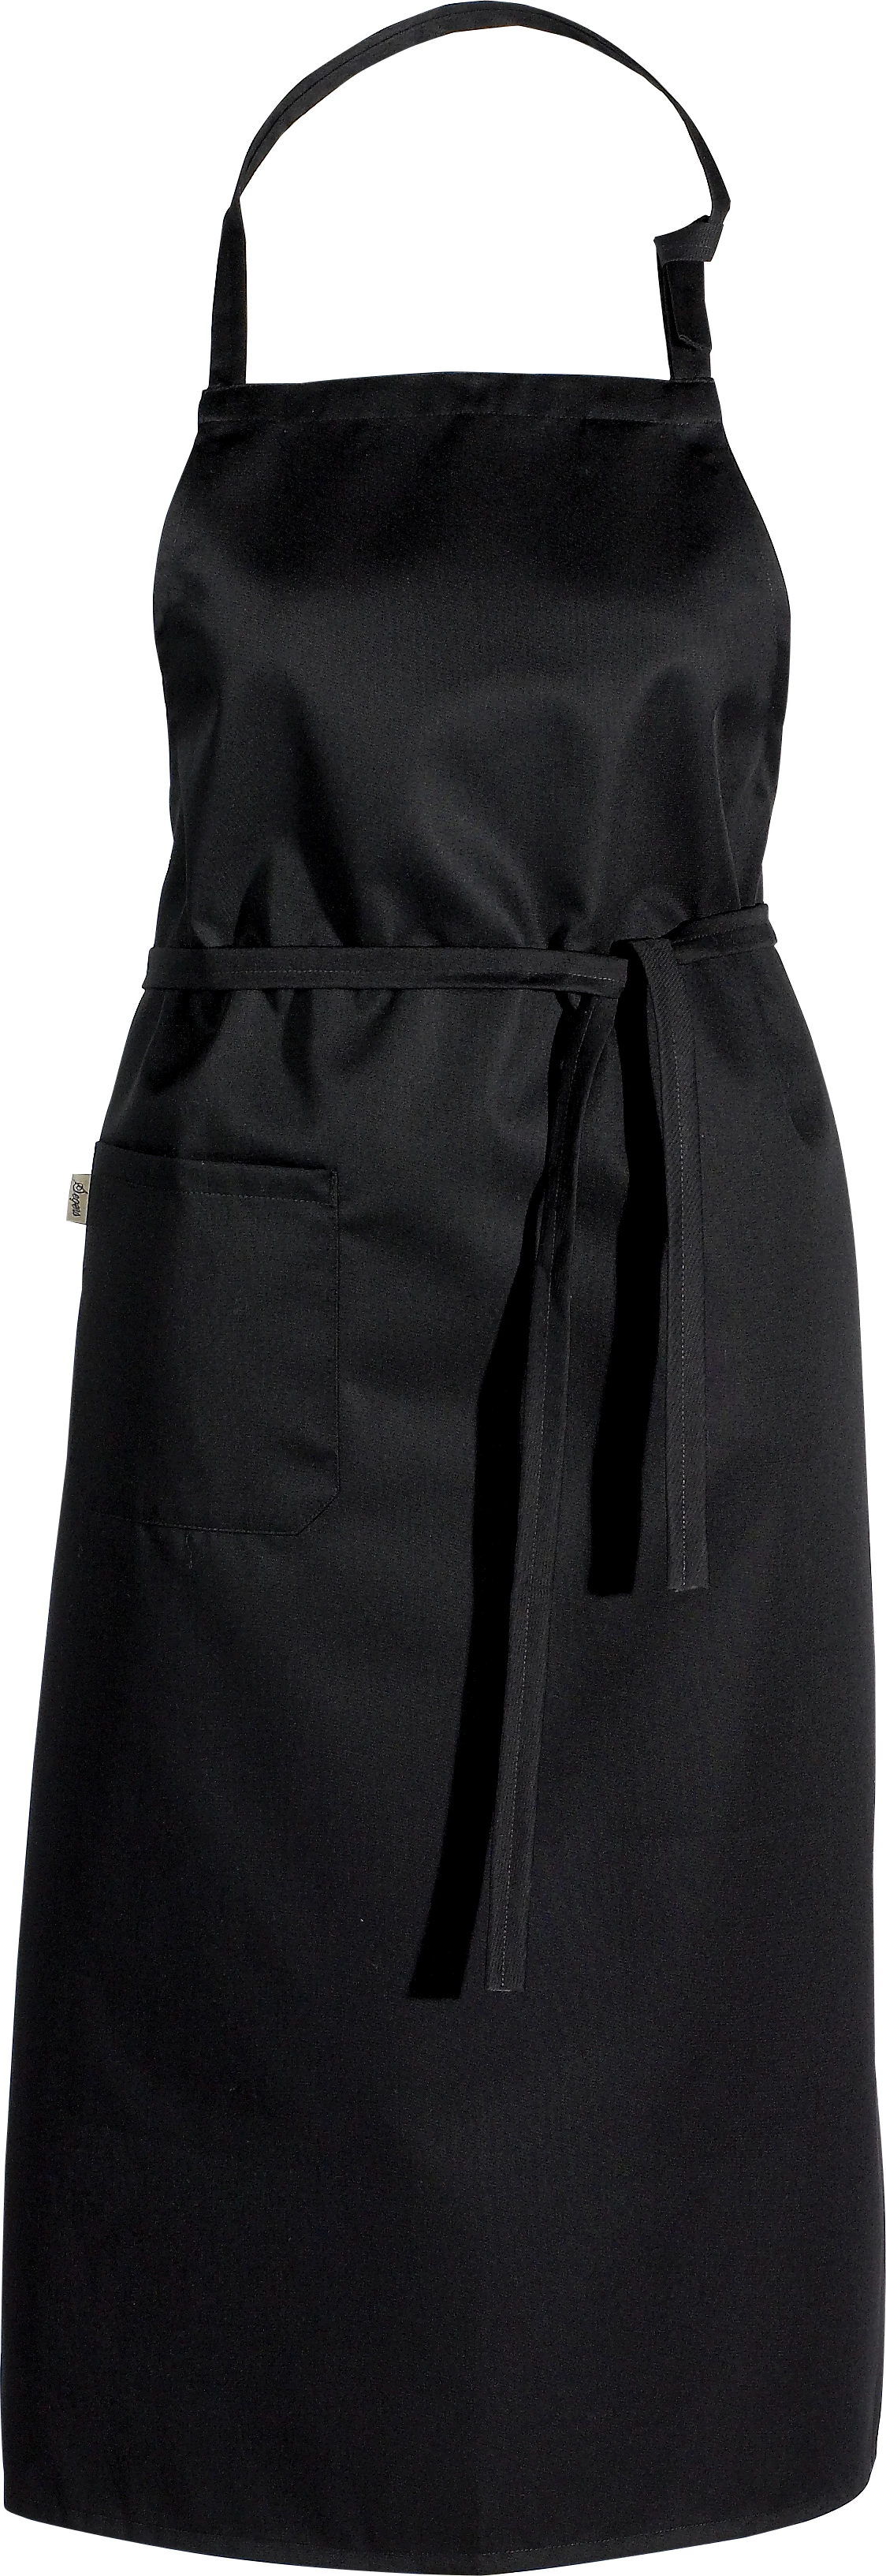 Segers forklæde med smæk, sort, 75 x 110 cm